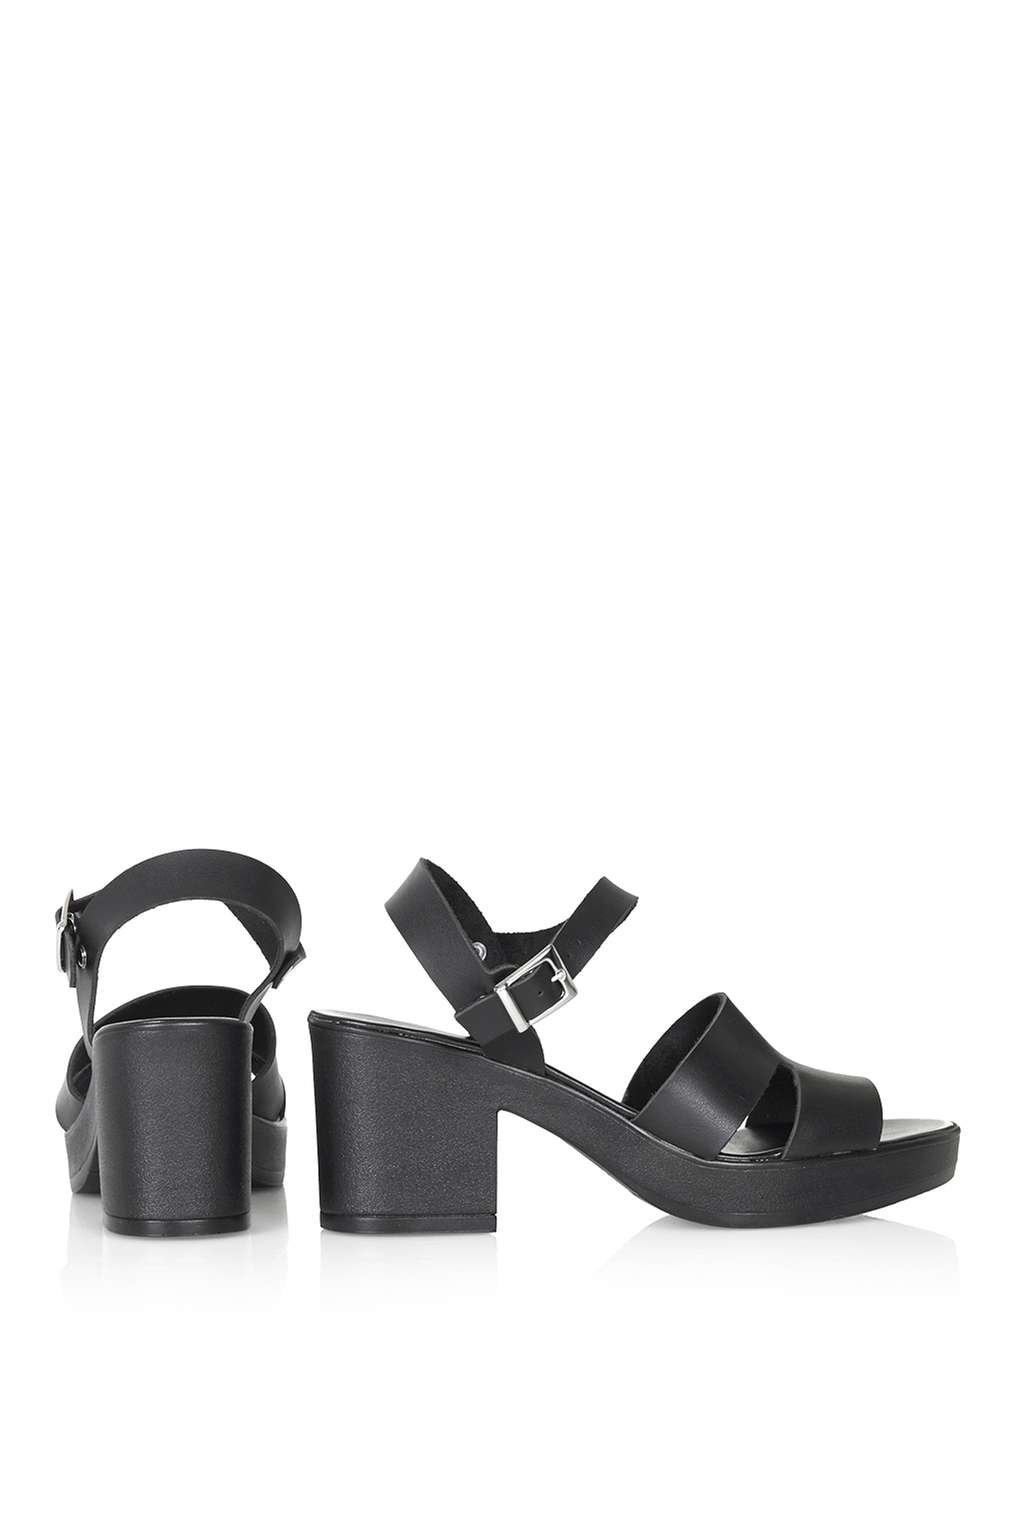 topshop black platform sandals